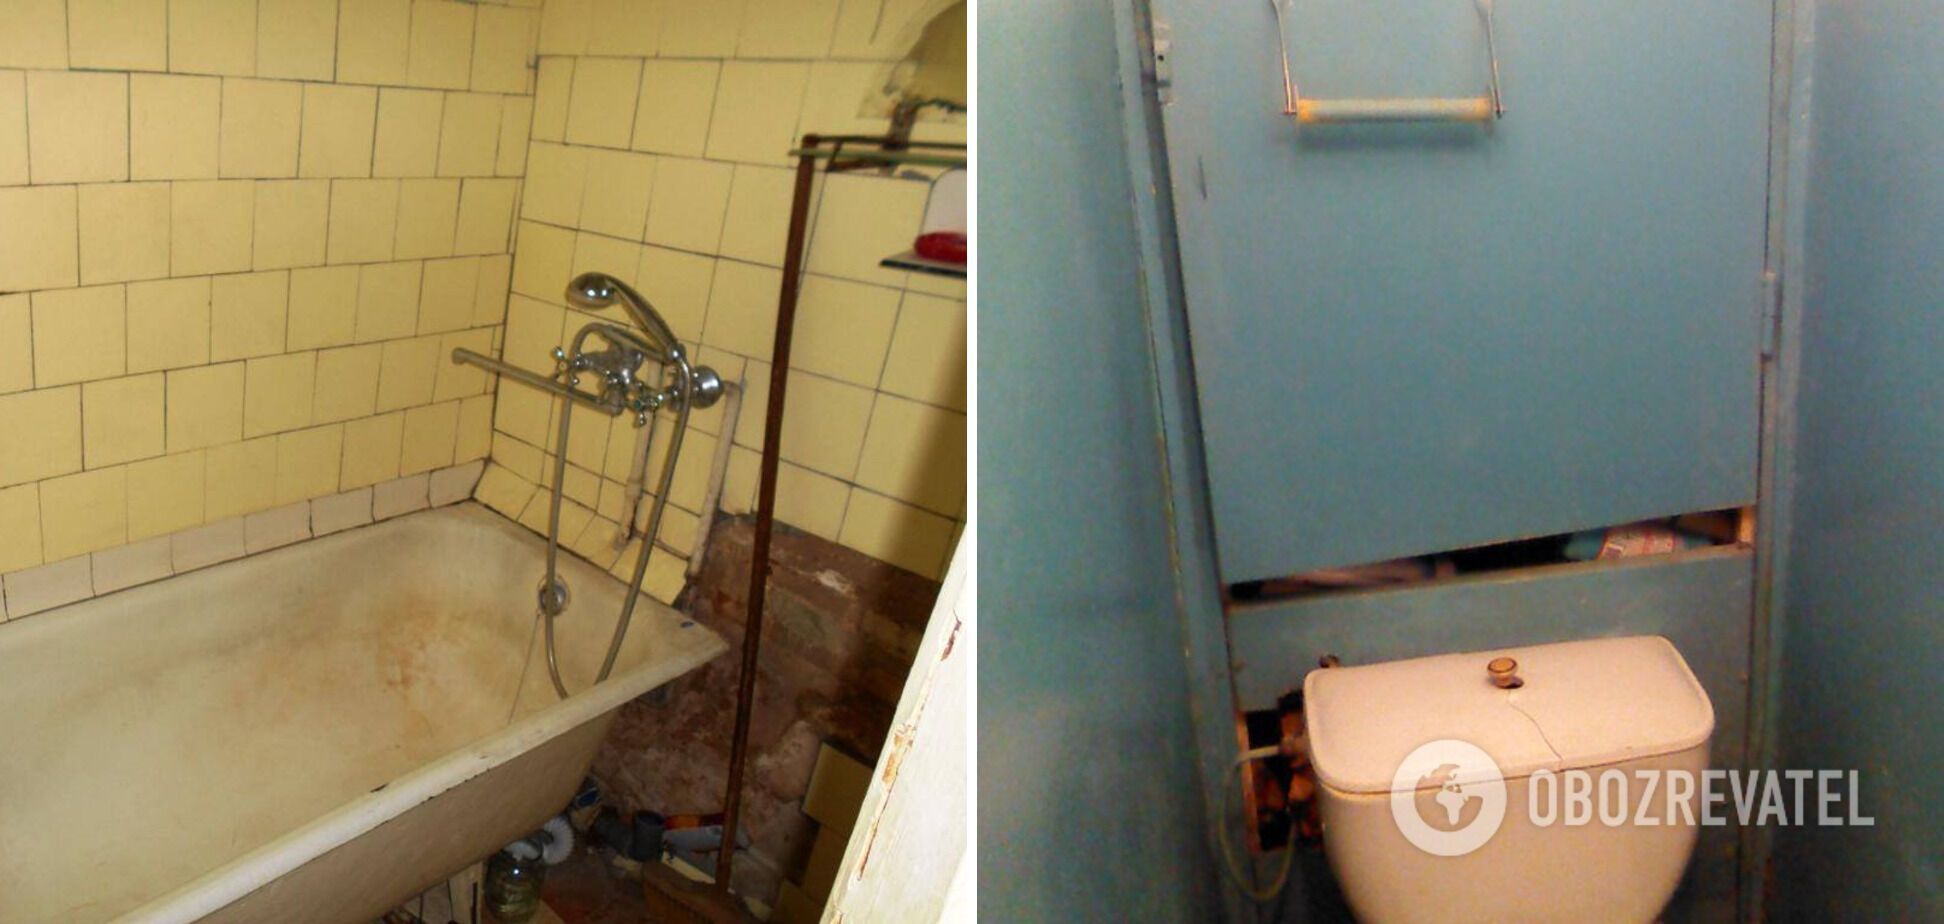 Ванная комната в СССР выглядит жутко.